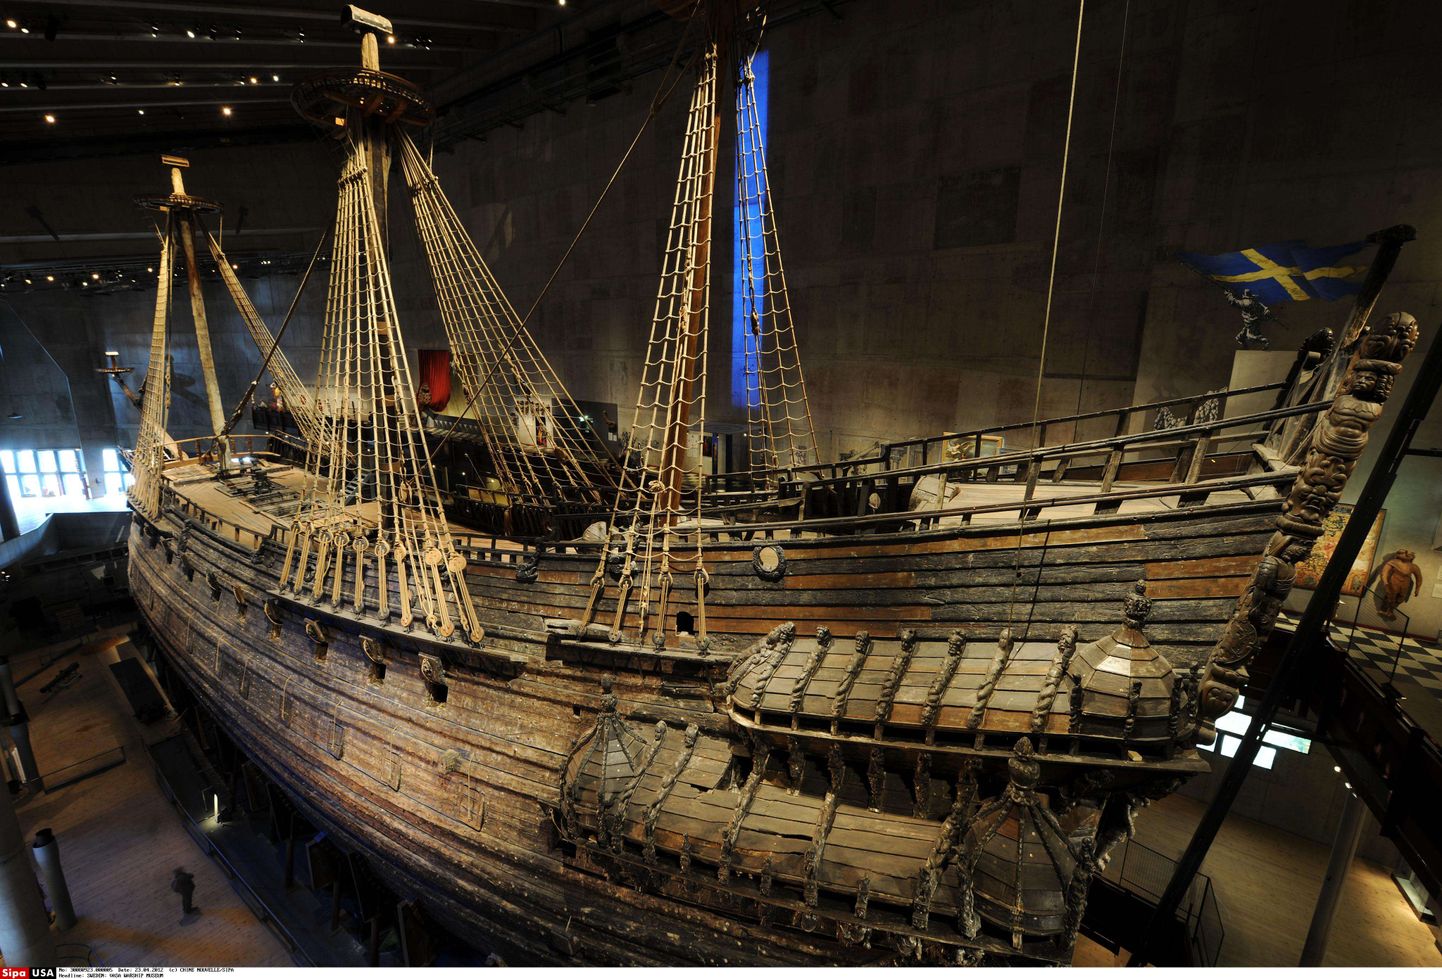 Rootsi 17. sajandi sõjalaev Vasa asub Vasa muuseumis pealinnas Stockholmis